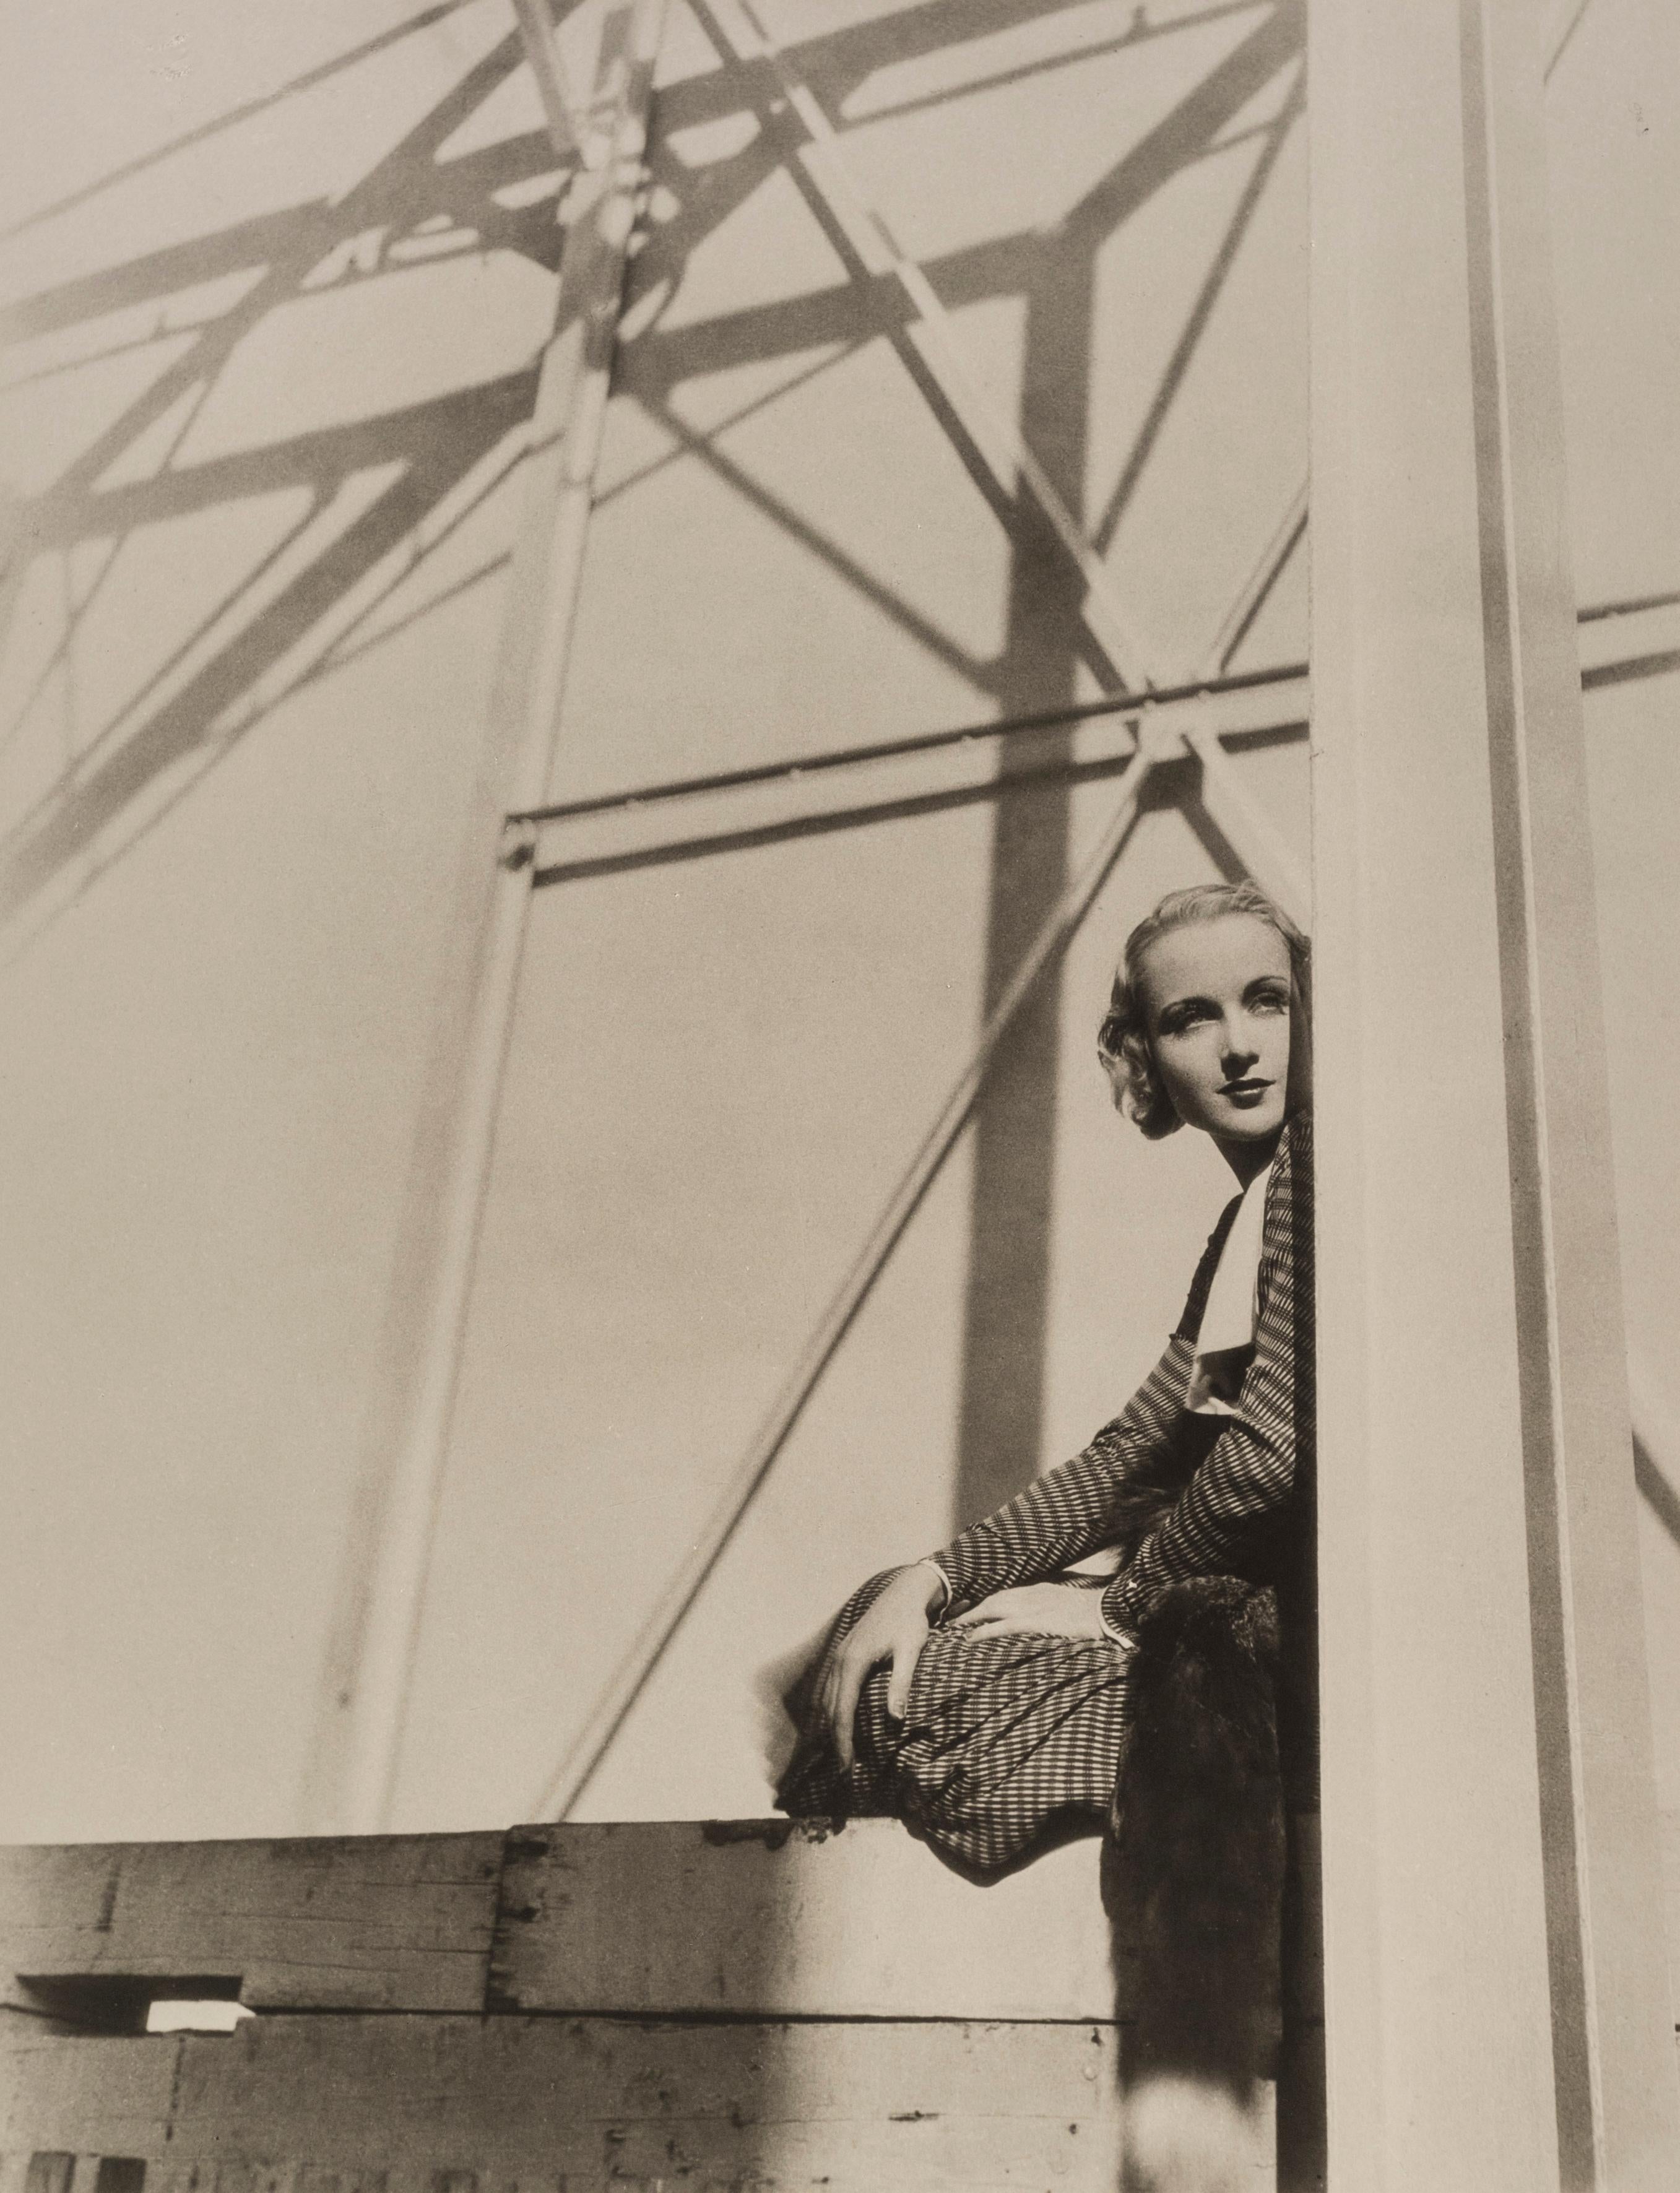 Carole Lombard, 1931 - Cecil Beaton (Porträtfotografie)
Signiert auf der Vorderseite des Passepartouts
Rückseitig mit Tintenstempel des Fotografen gestempelt
Silbergelatineabzug, gedruckt 1970er Jahre
22 x 17 Zoll

Cecil Beaton (1904-1980) hatte ein